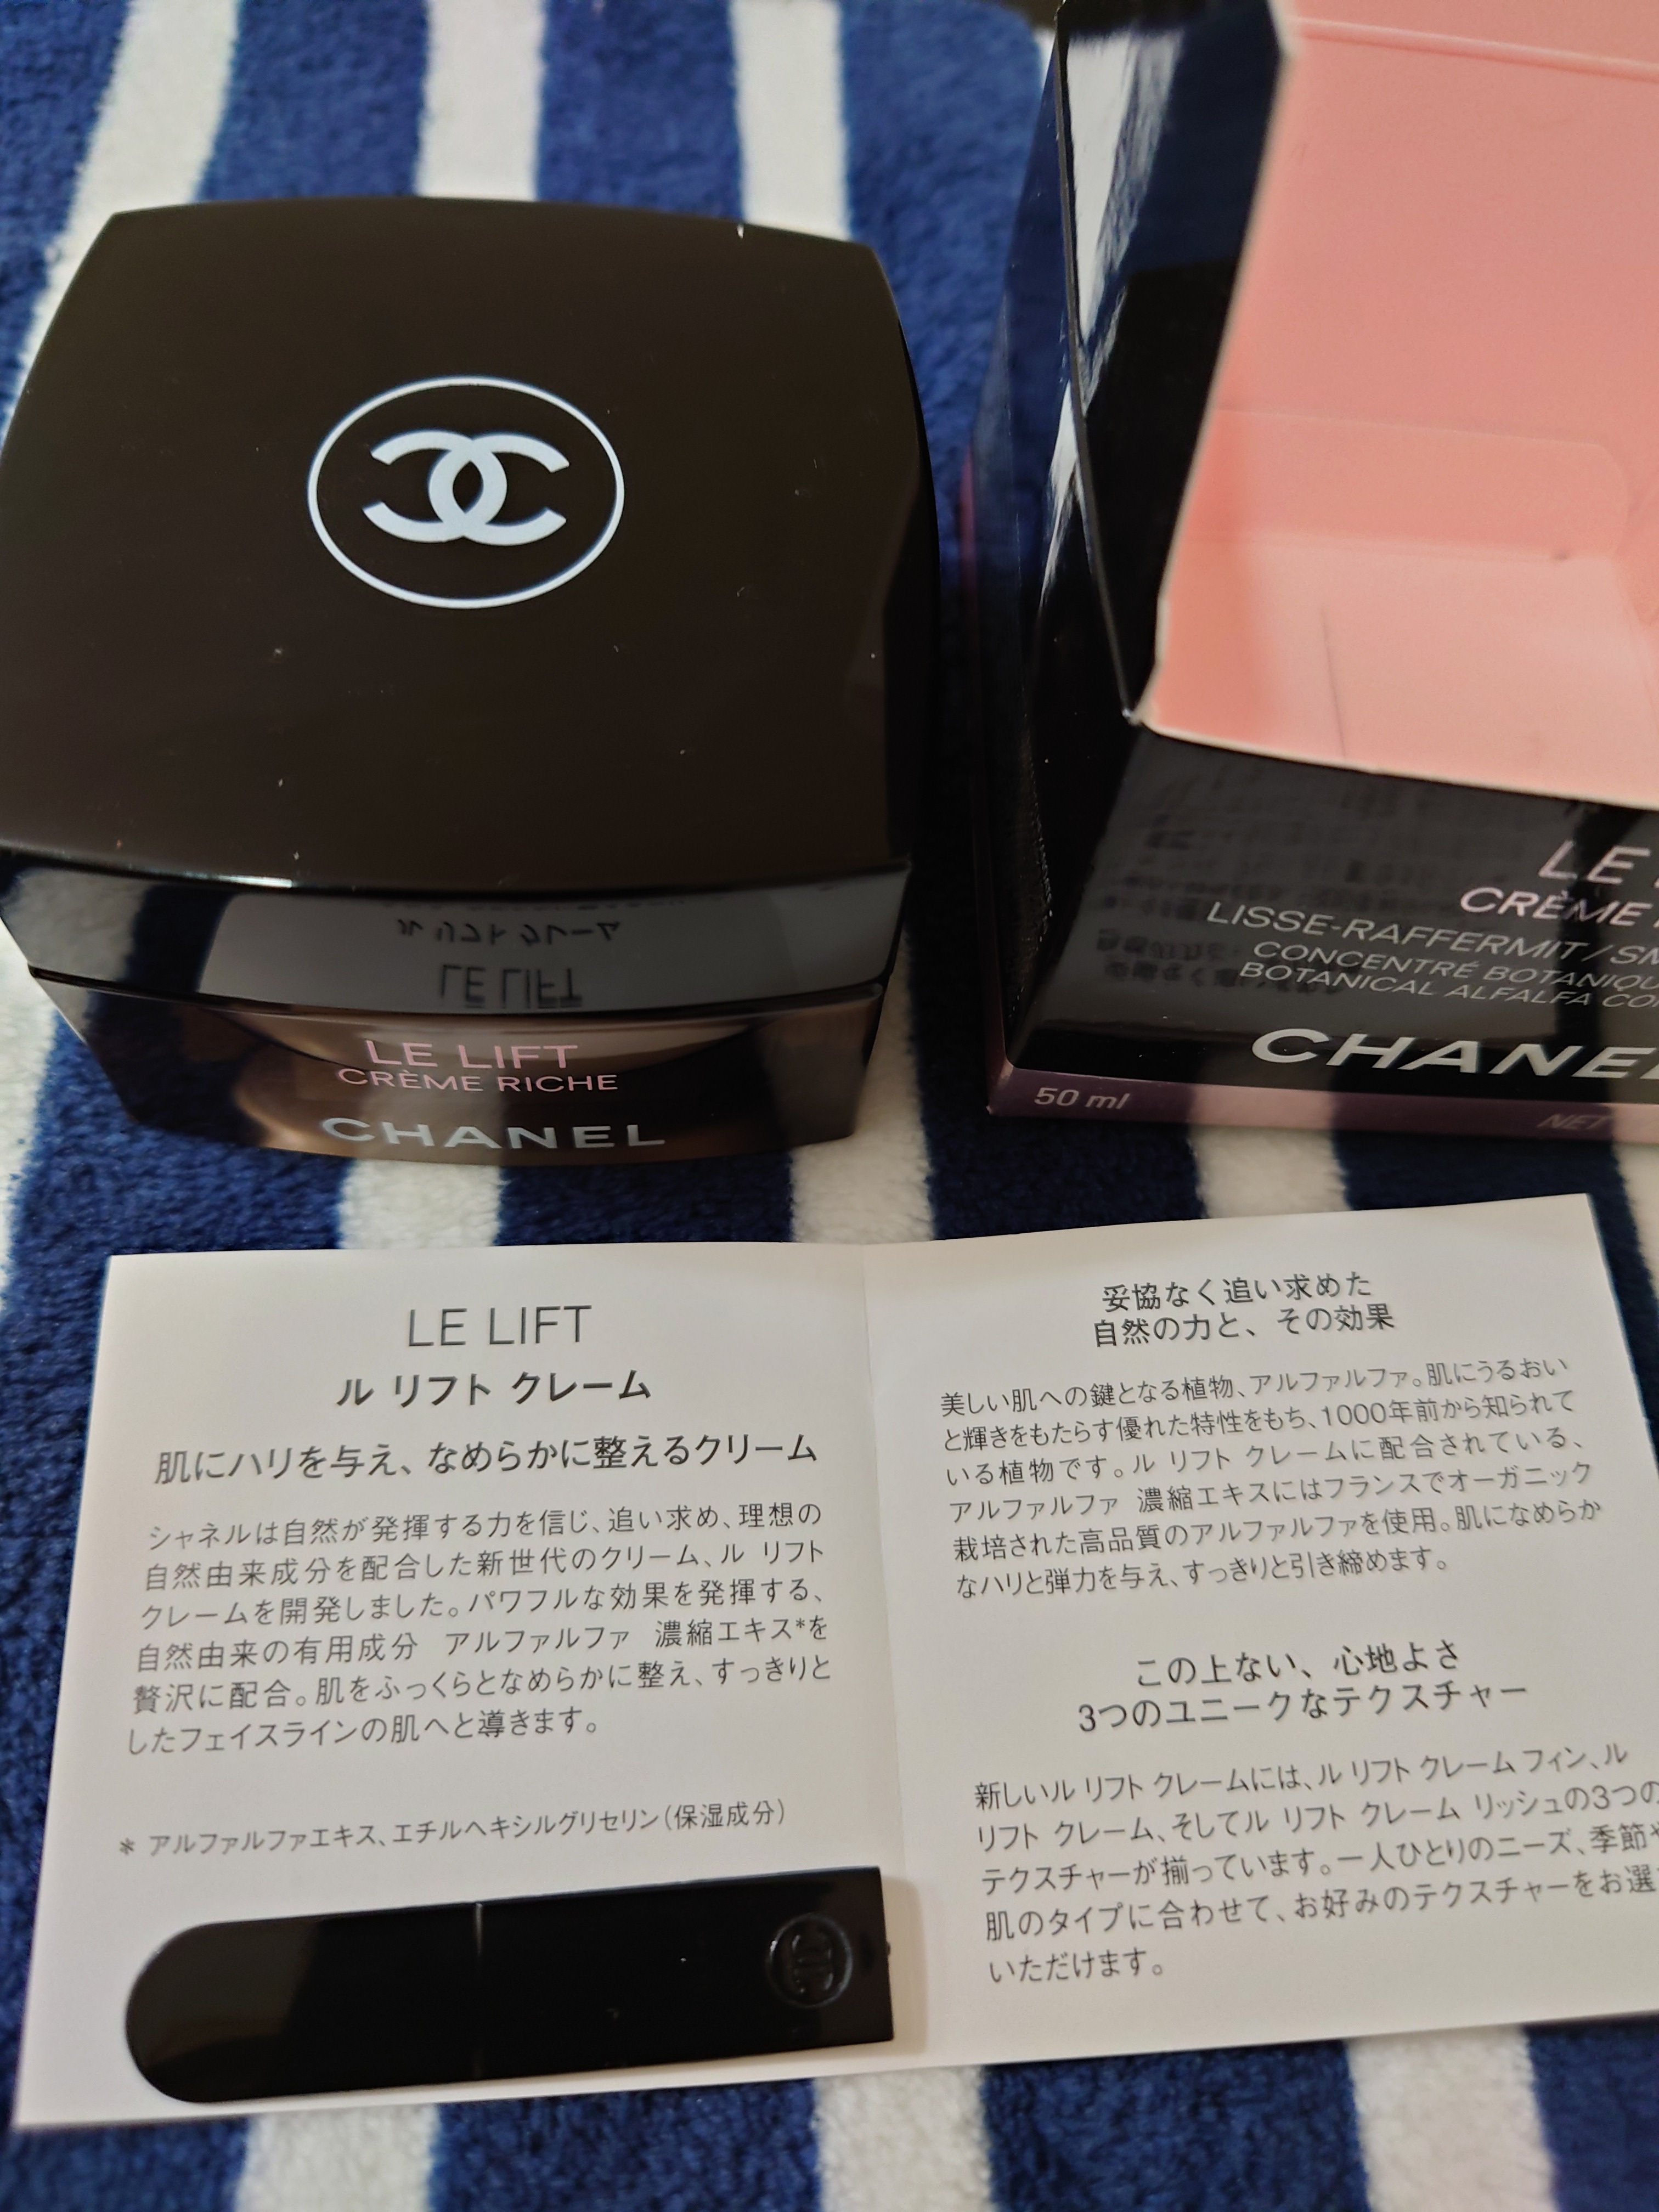 【新品未使用】CHANEL LE LIFT 日本の免税店にて購入